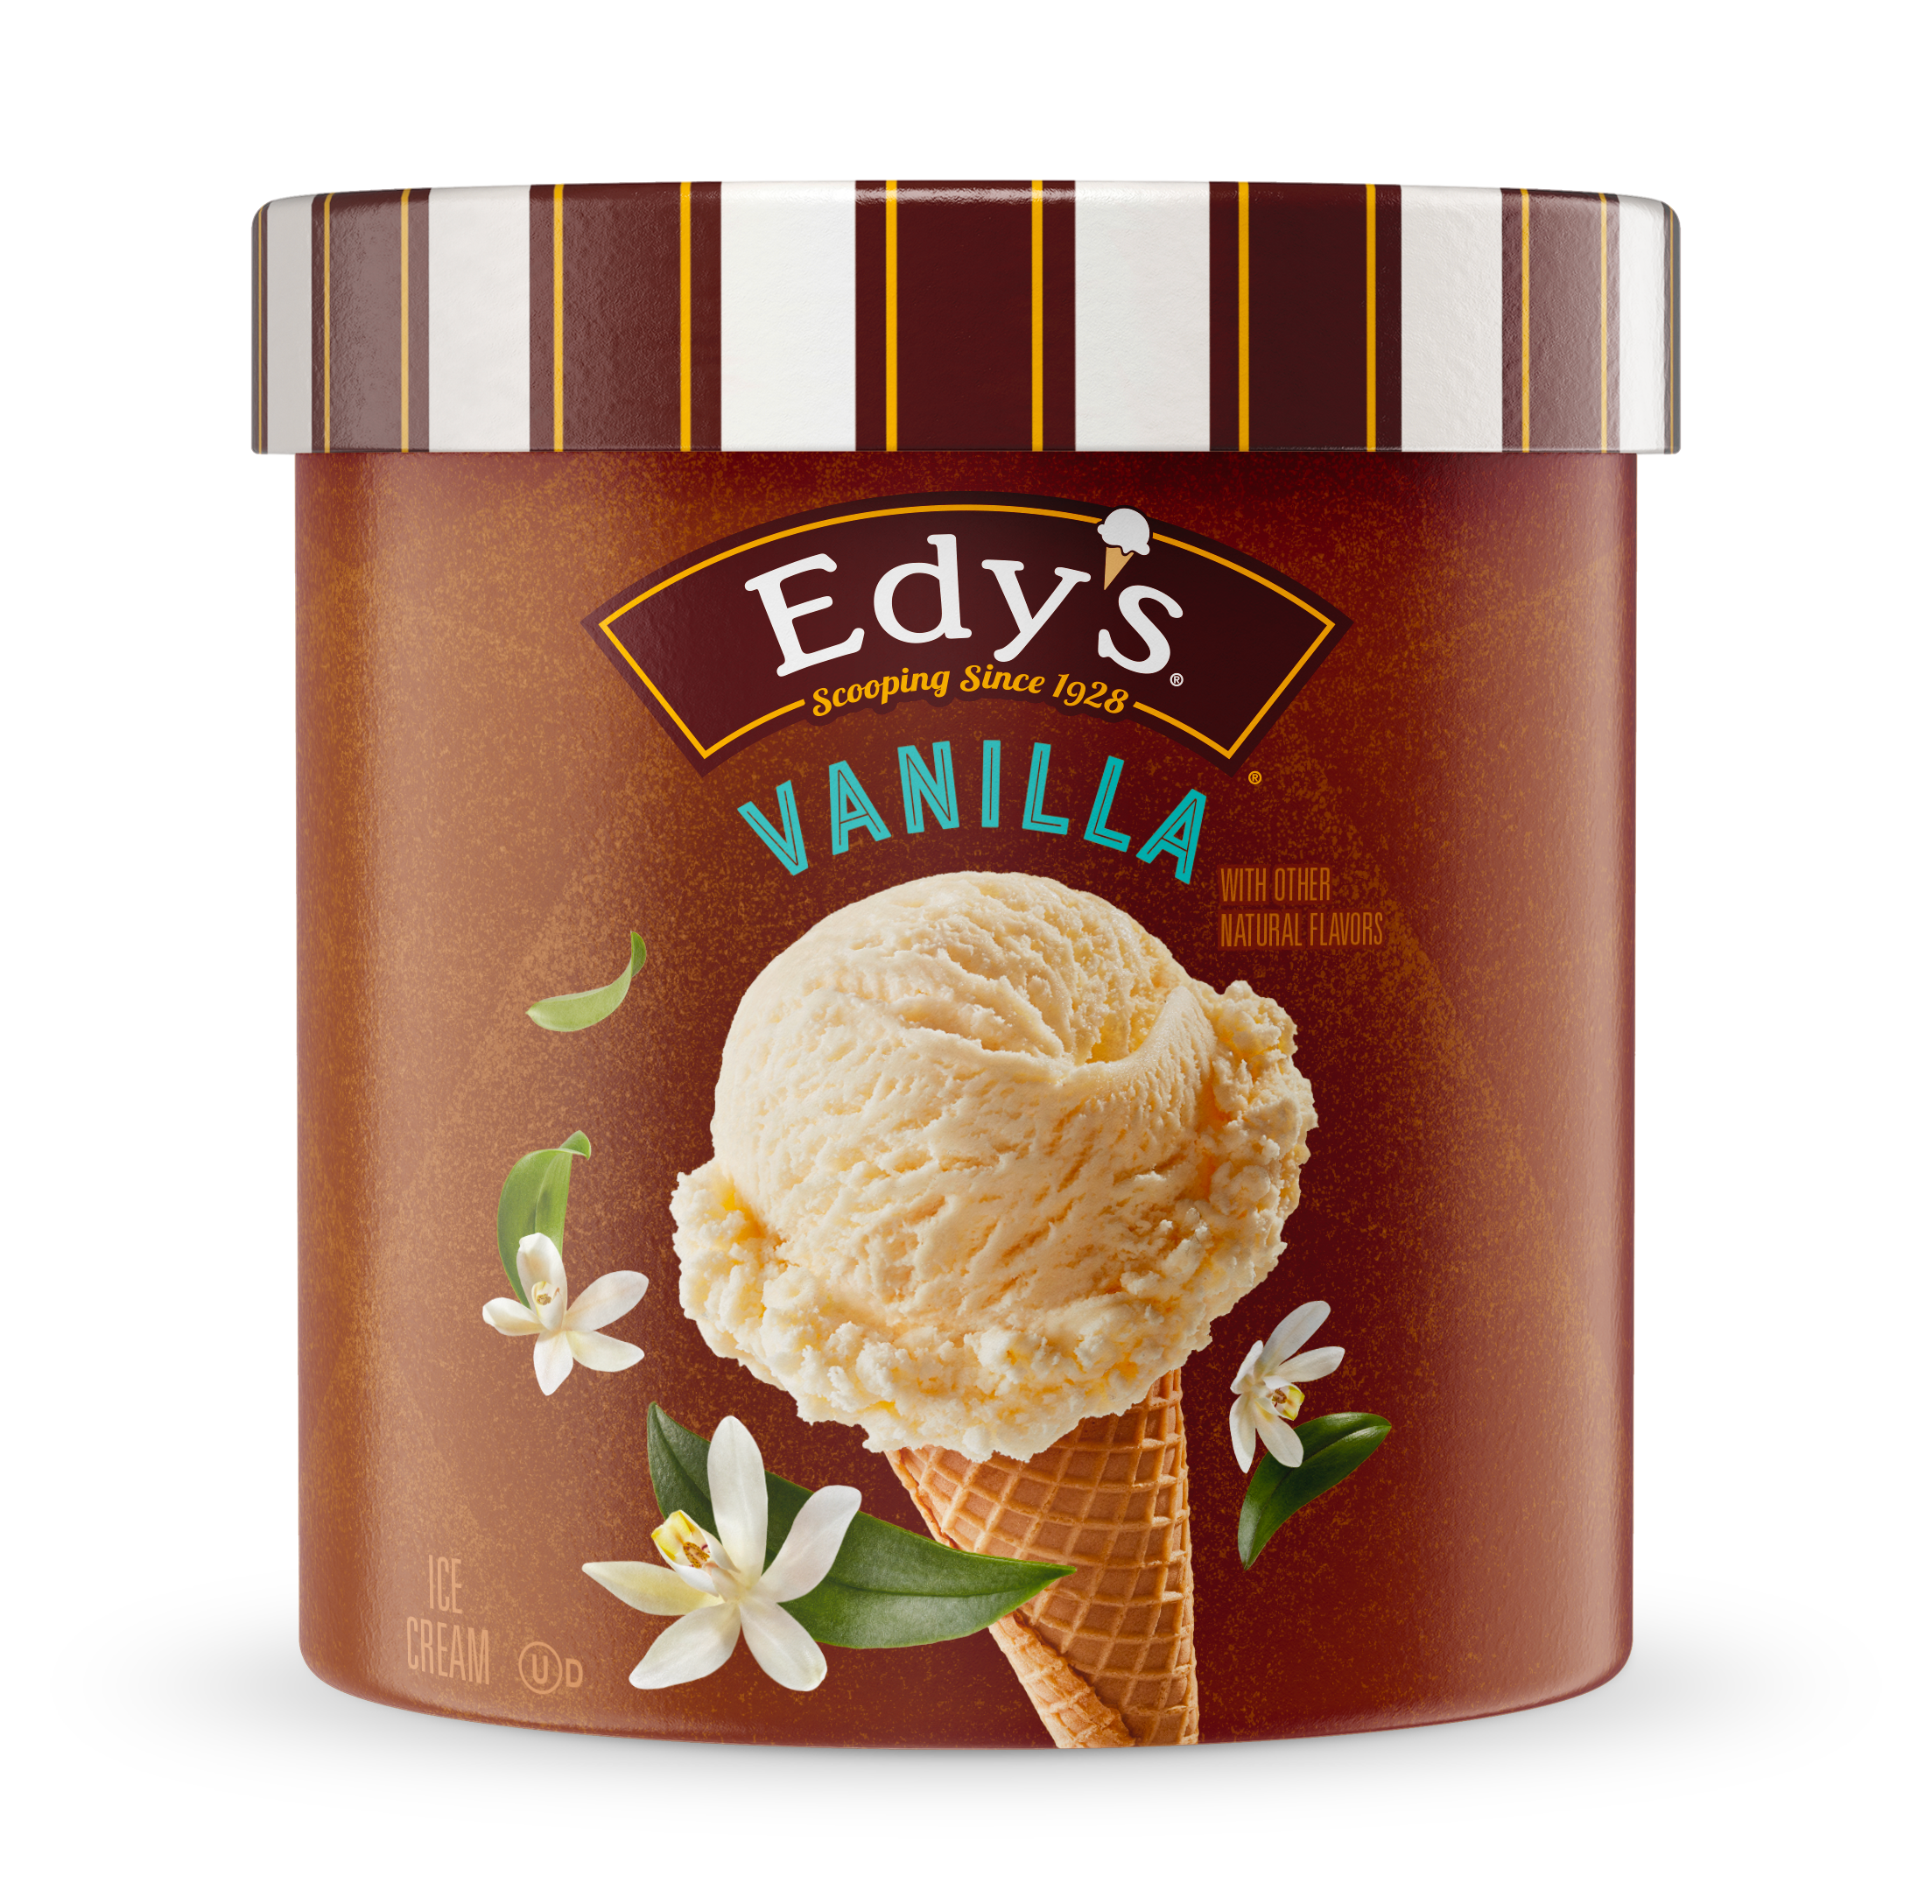 http://www.icecream.com/content/dam/dreyersgrandicecreaminc/us/en/edy%27s/products/classics/Edys-48oz-3D-Vanilla.png